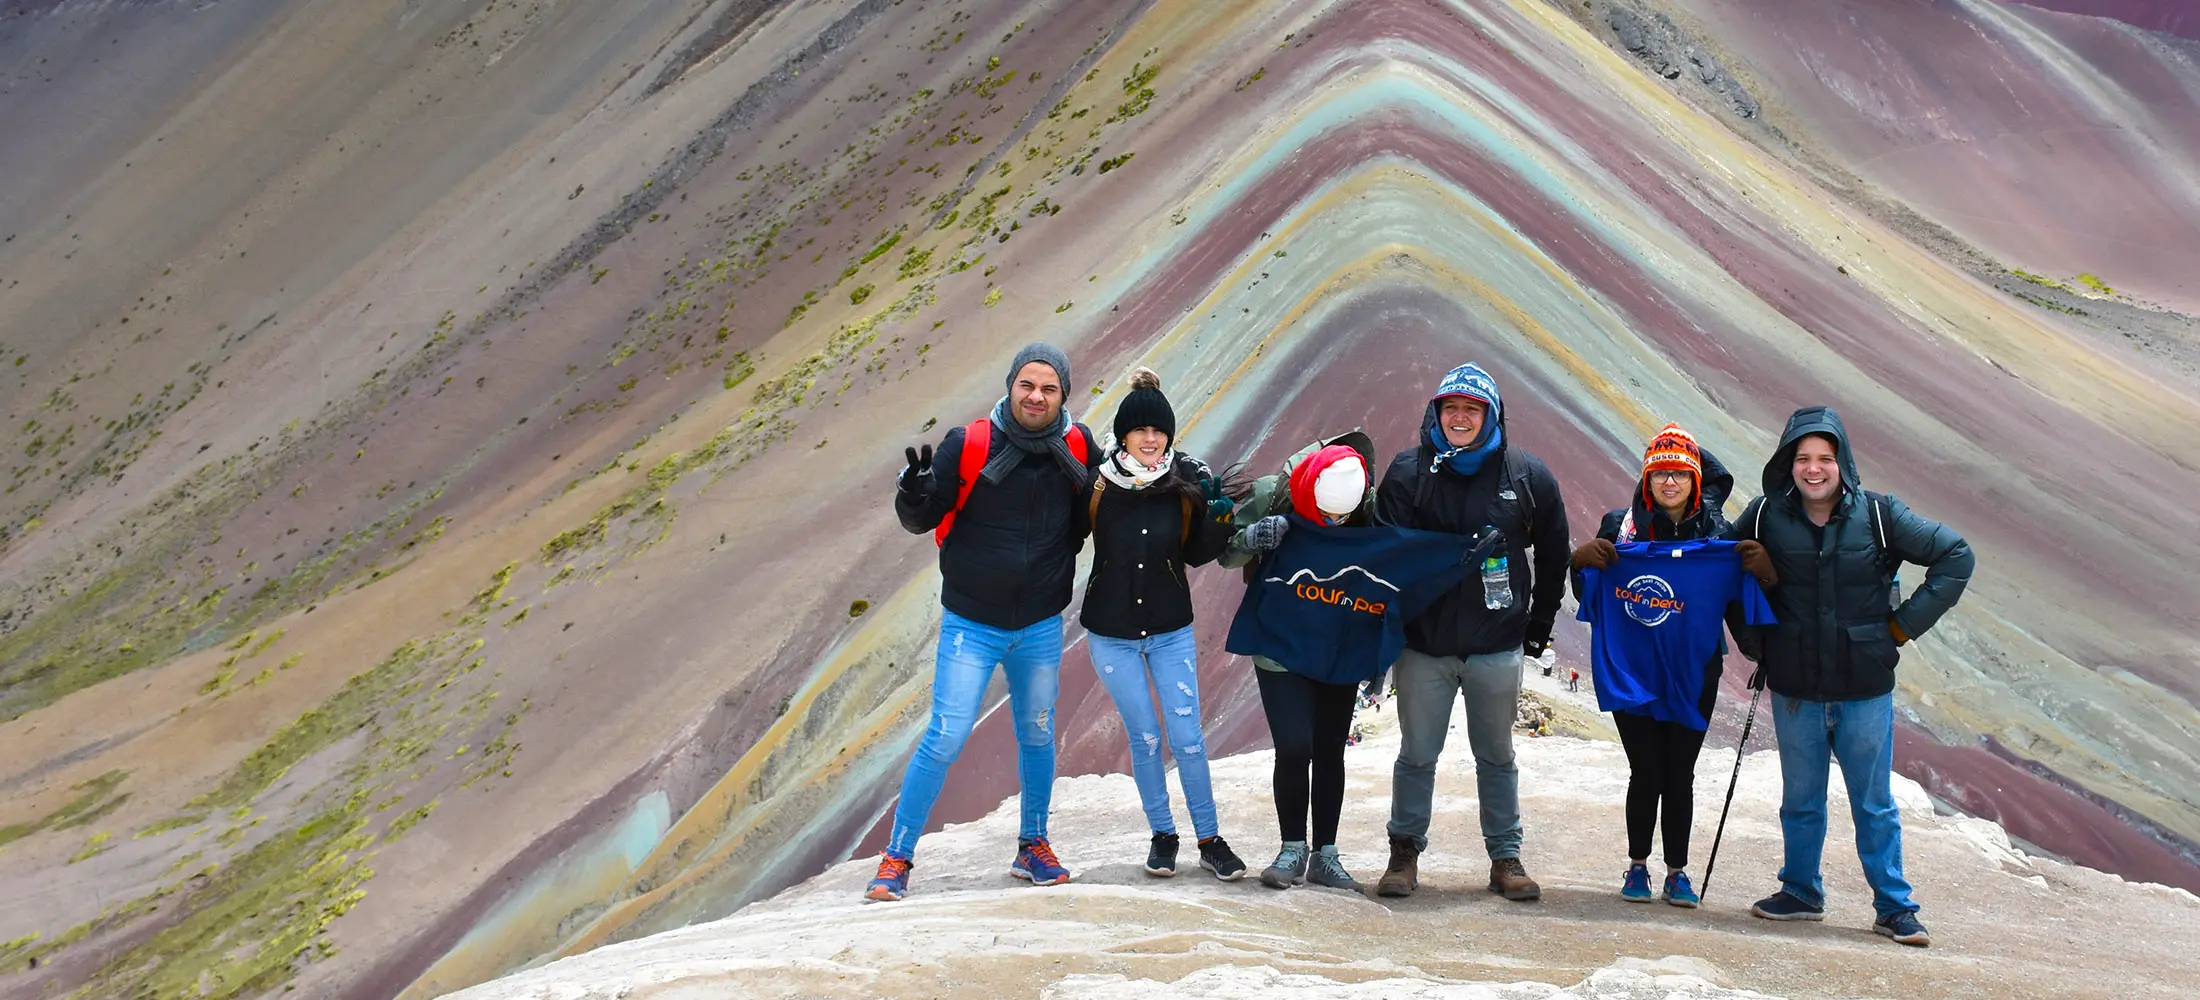 Montaña arco iris Perú vinicunca 7 colores